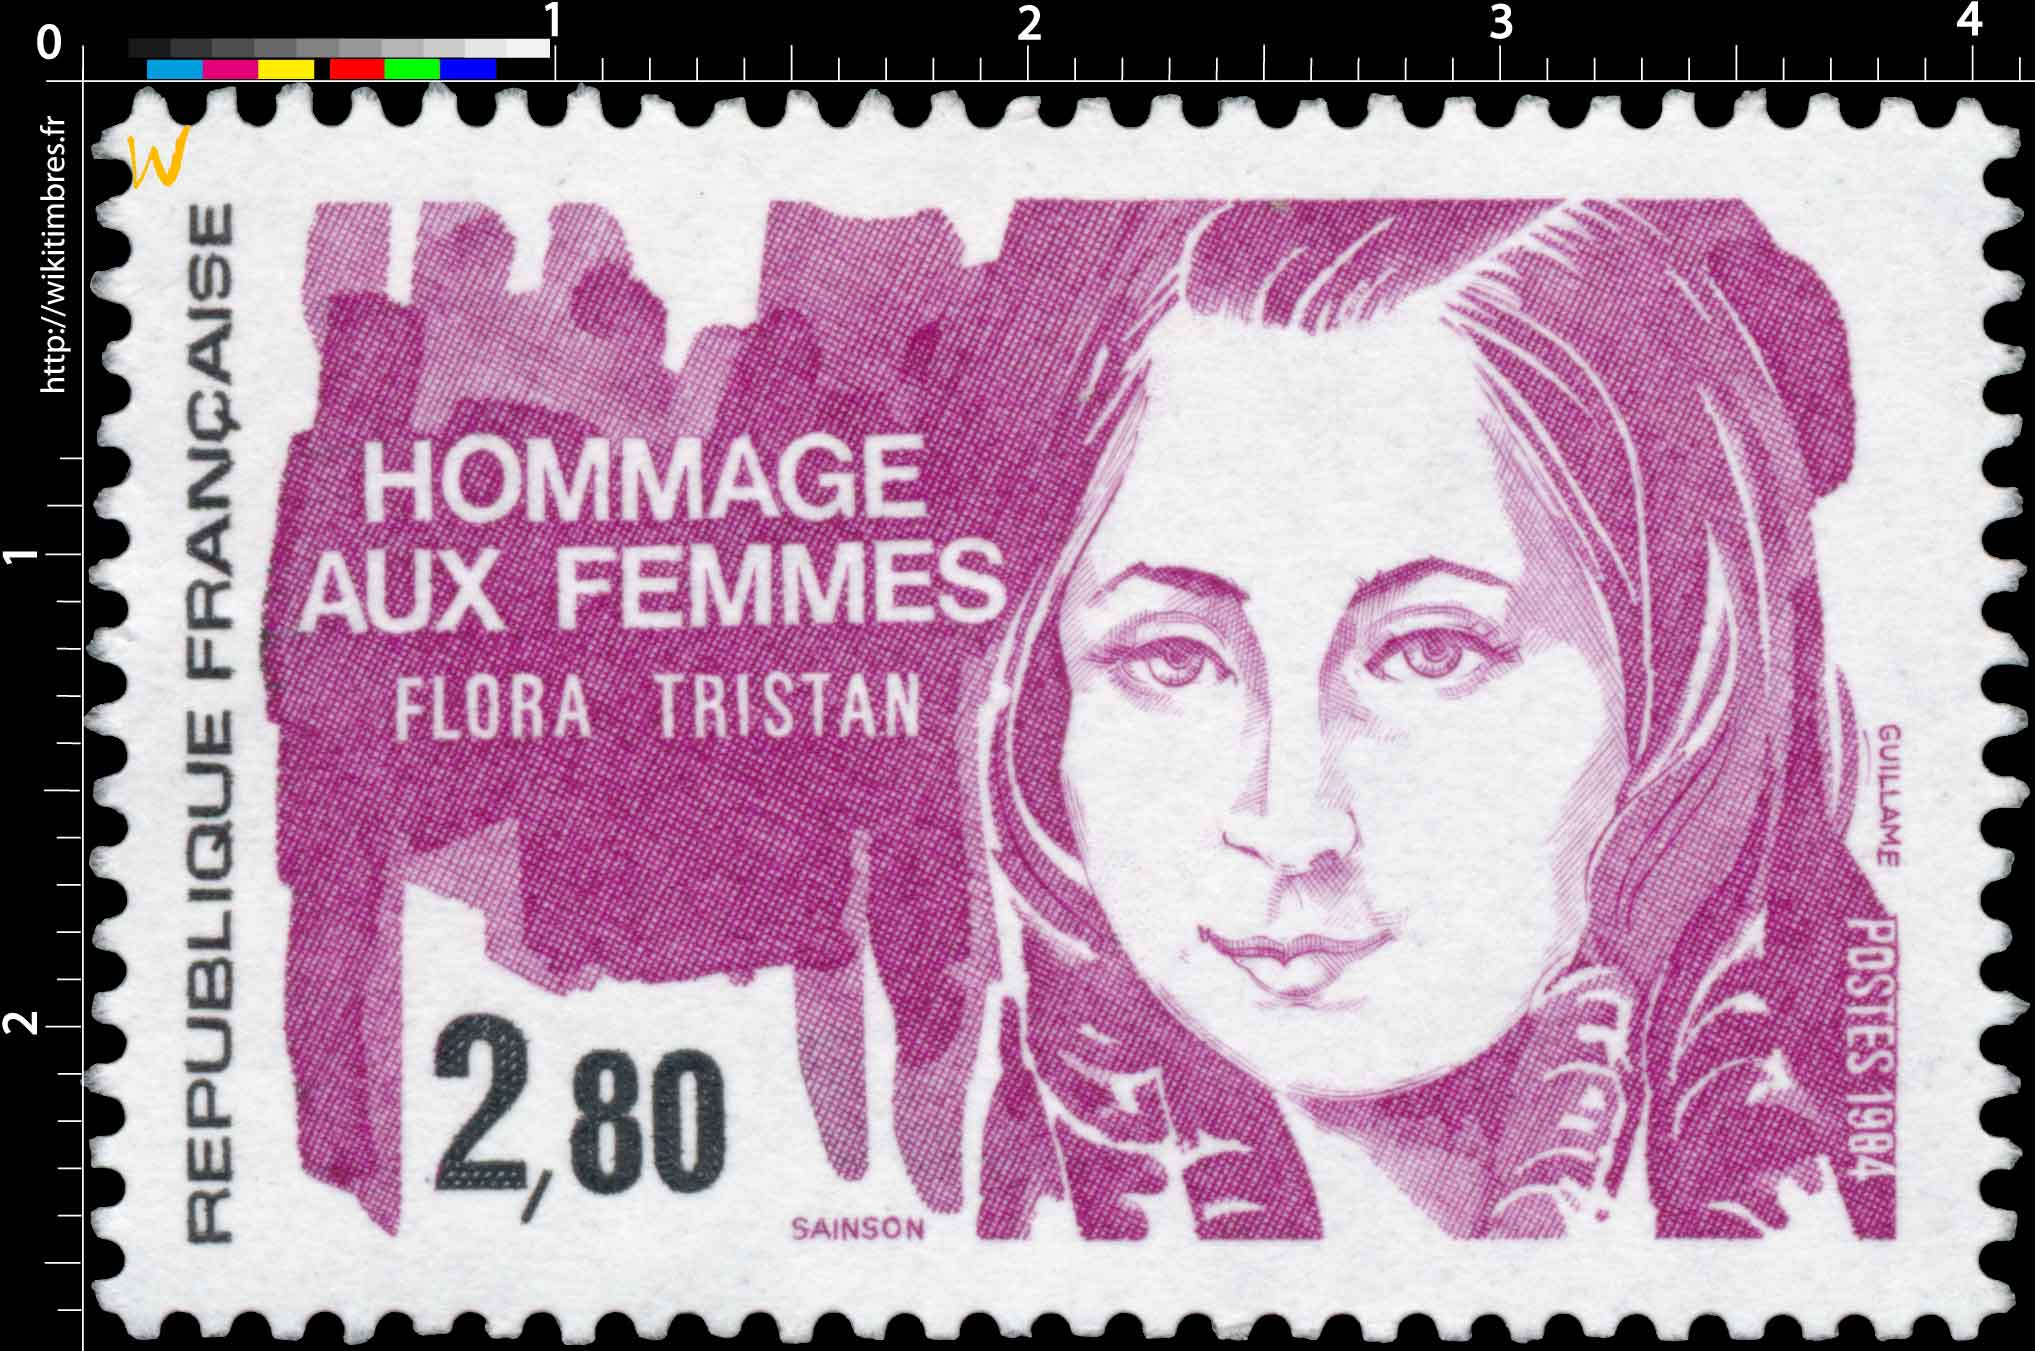 1984 HOMMAGE AUX FEMMES FLORA TRISTAN